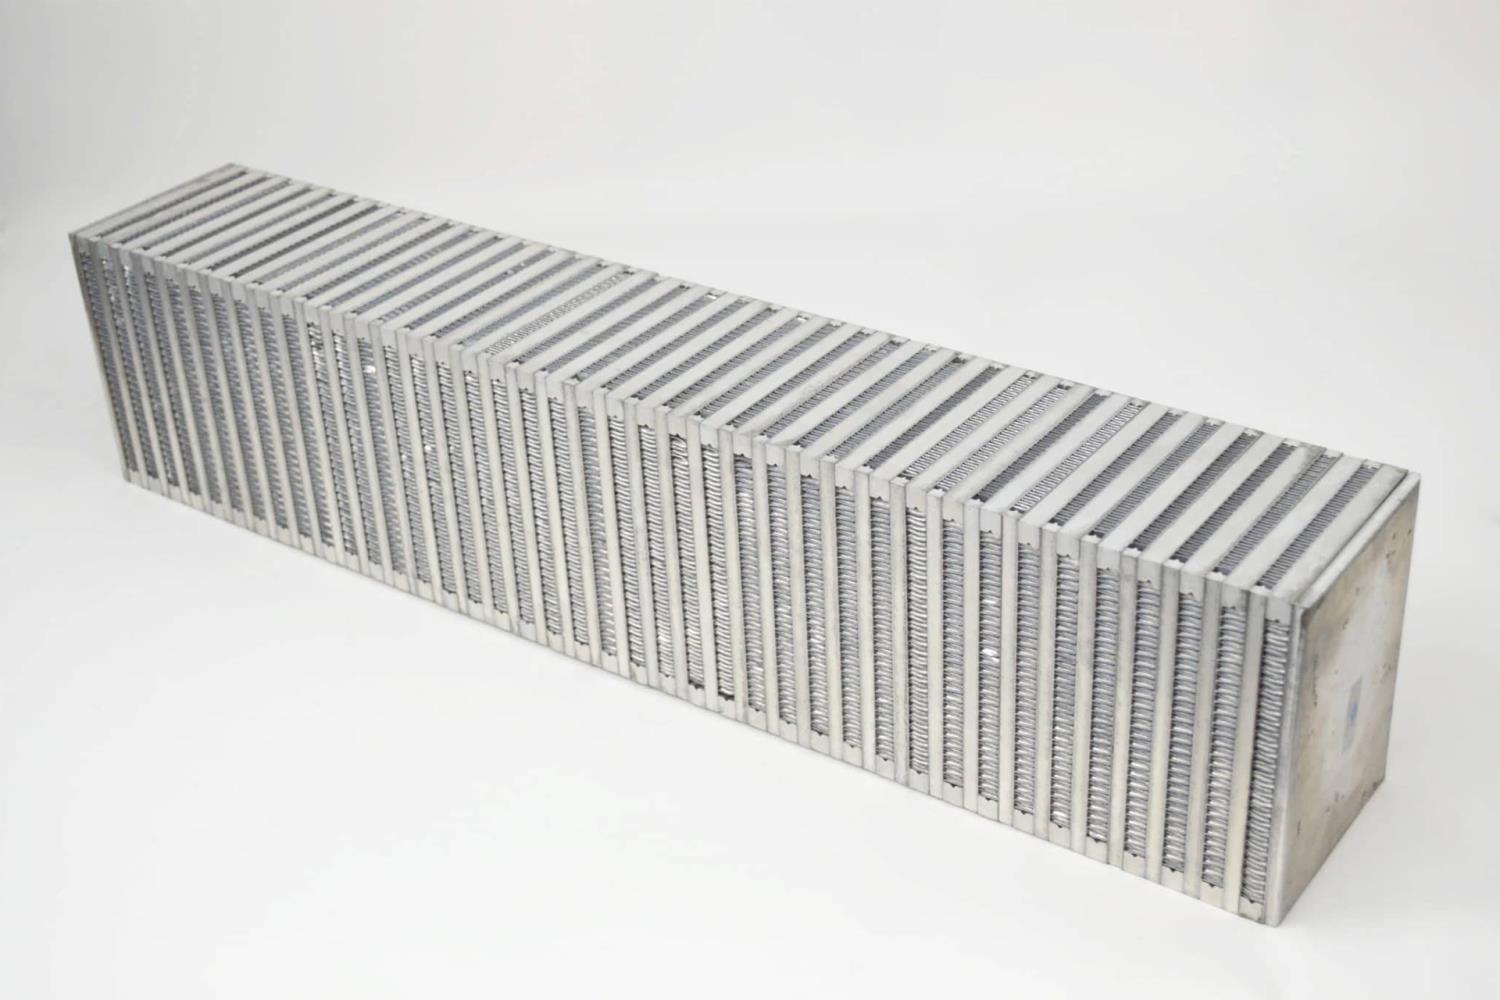 High-Performance Bar & Plate Intercooler Core, 27" x 6" x 3", Vertical Flow, Universal Core